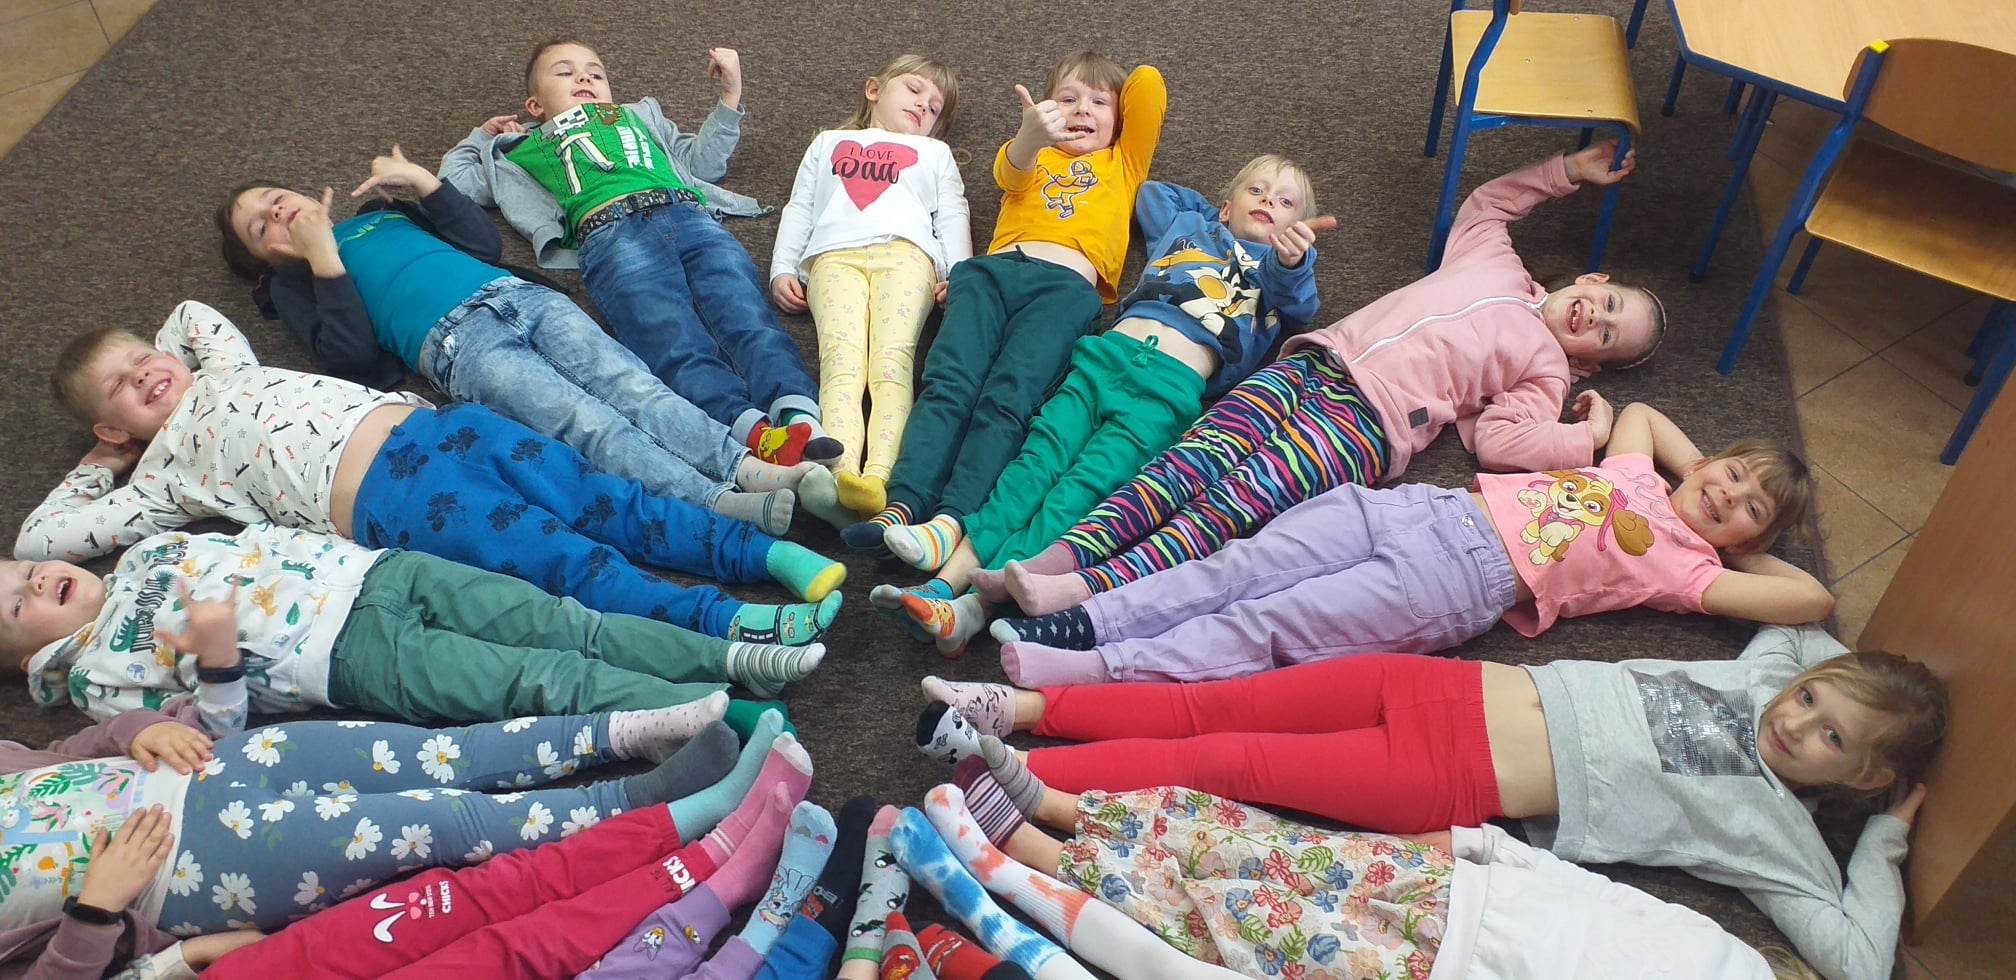 Dzieci leżące na podłodze stykające się na środku nogrami. Na nogach mają kolorowe, różne skarpetki